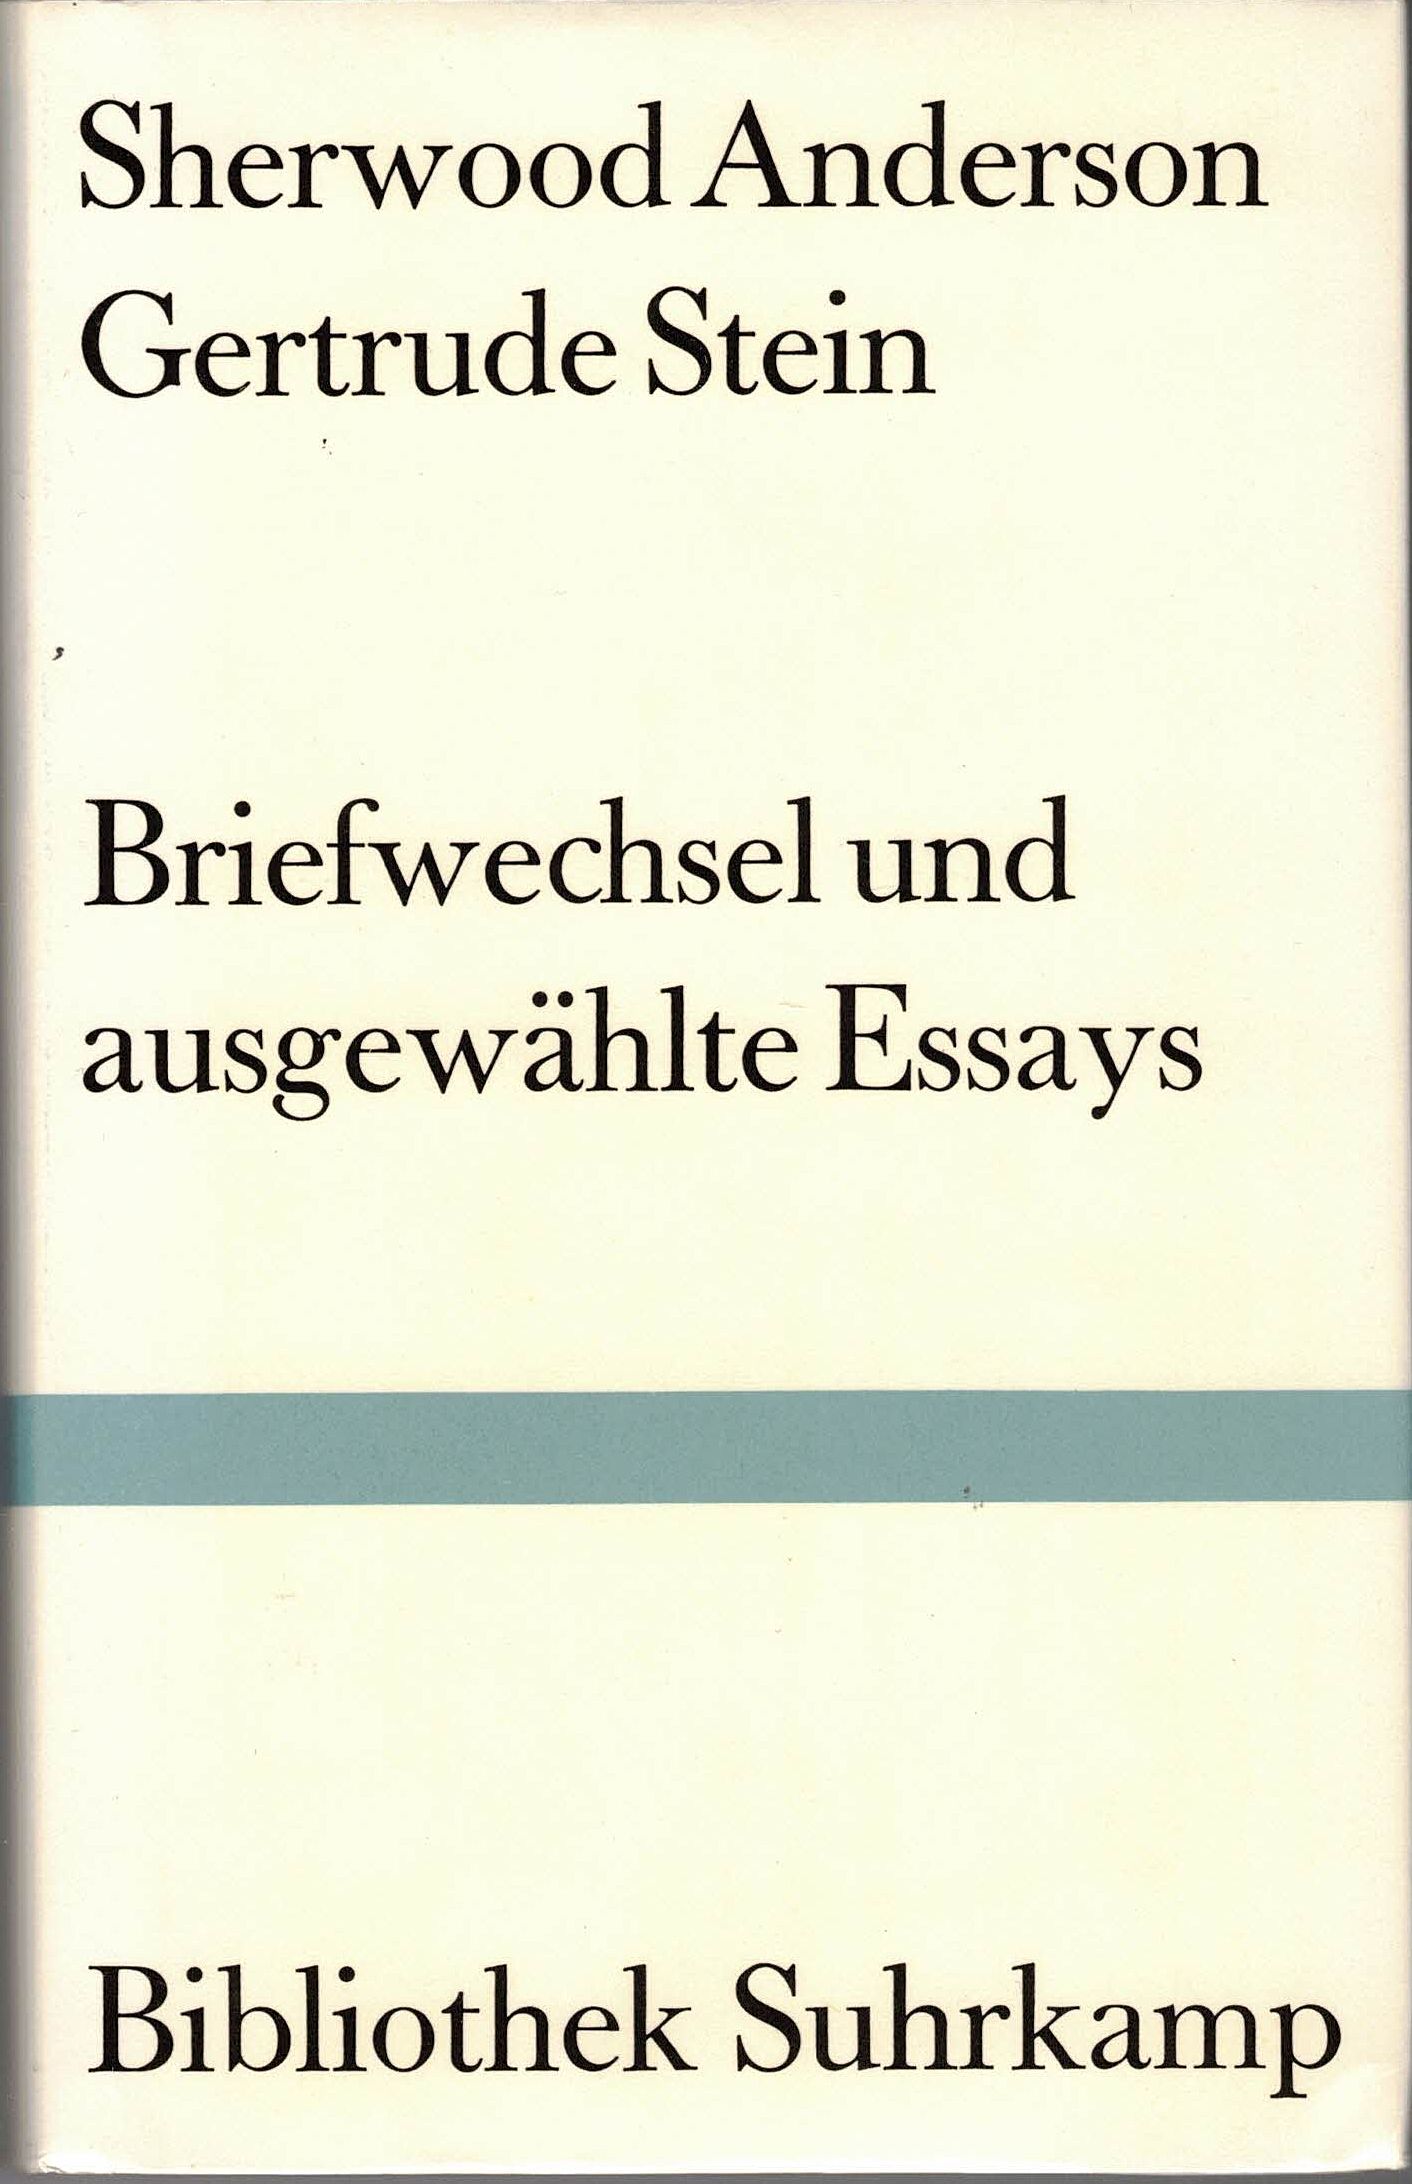 Briefwechsel und ausgewählte Essays. - Anderson, Sherwood und Gertrude Stein